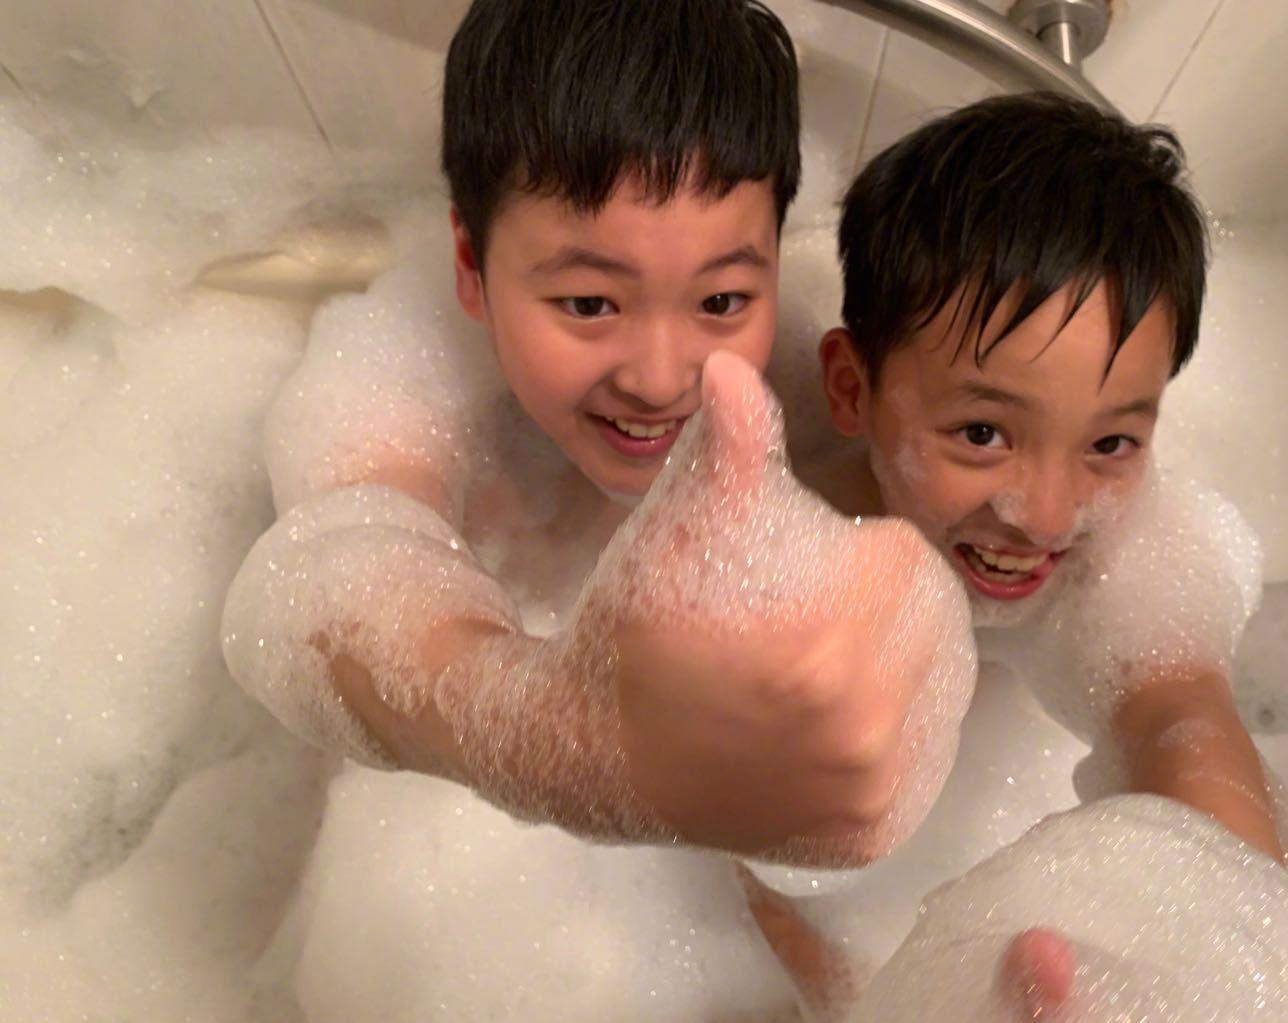 马景涛晒儿子洗澡逗趣照 兄弟俩吐舌扮萌像妈妈